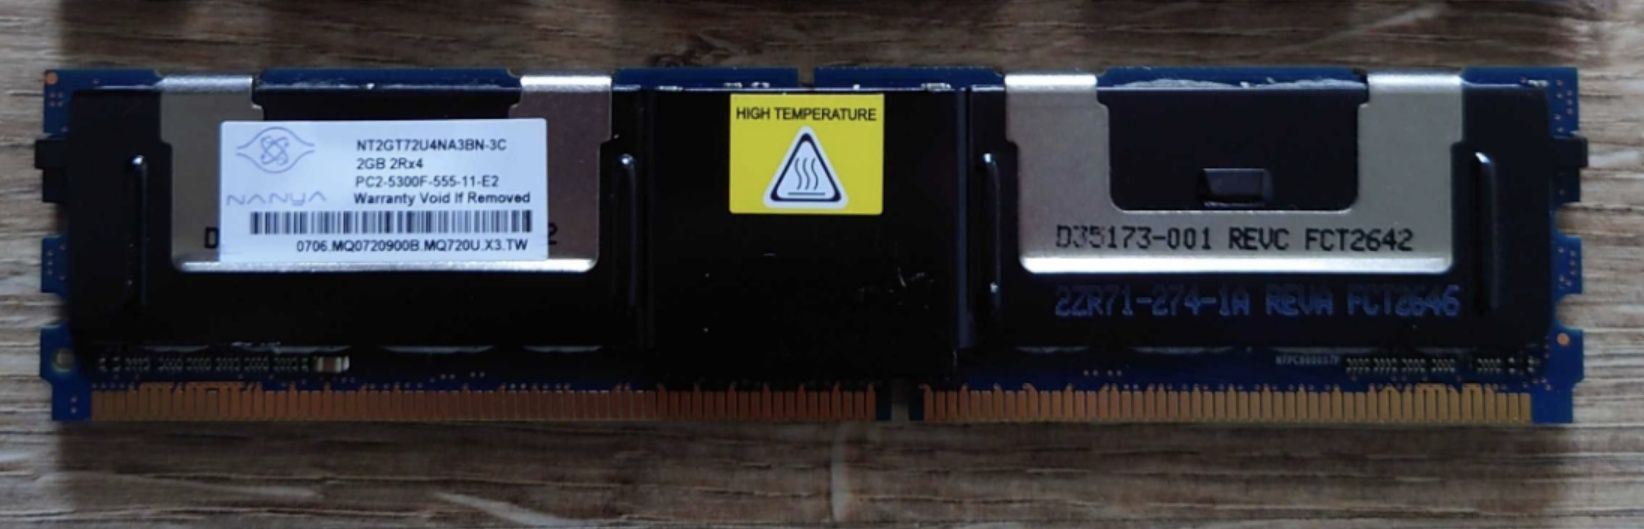 Pamięć RAM NT2GT72U4NA3BN-3C Nanya 2GB PC2-5300F DDR2-667MHz